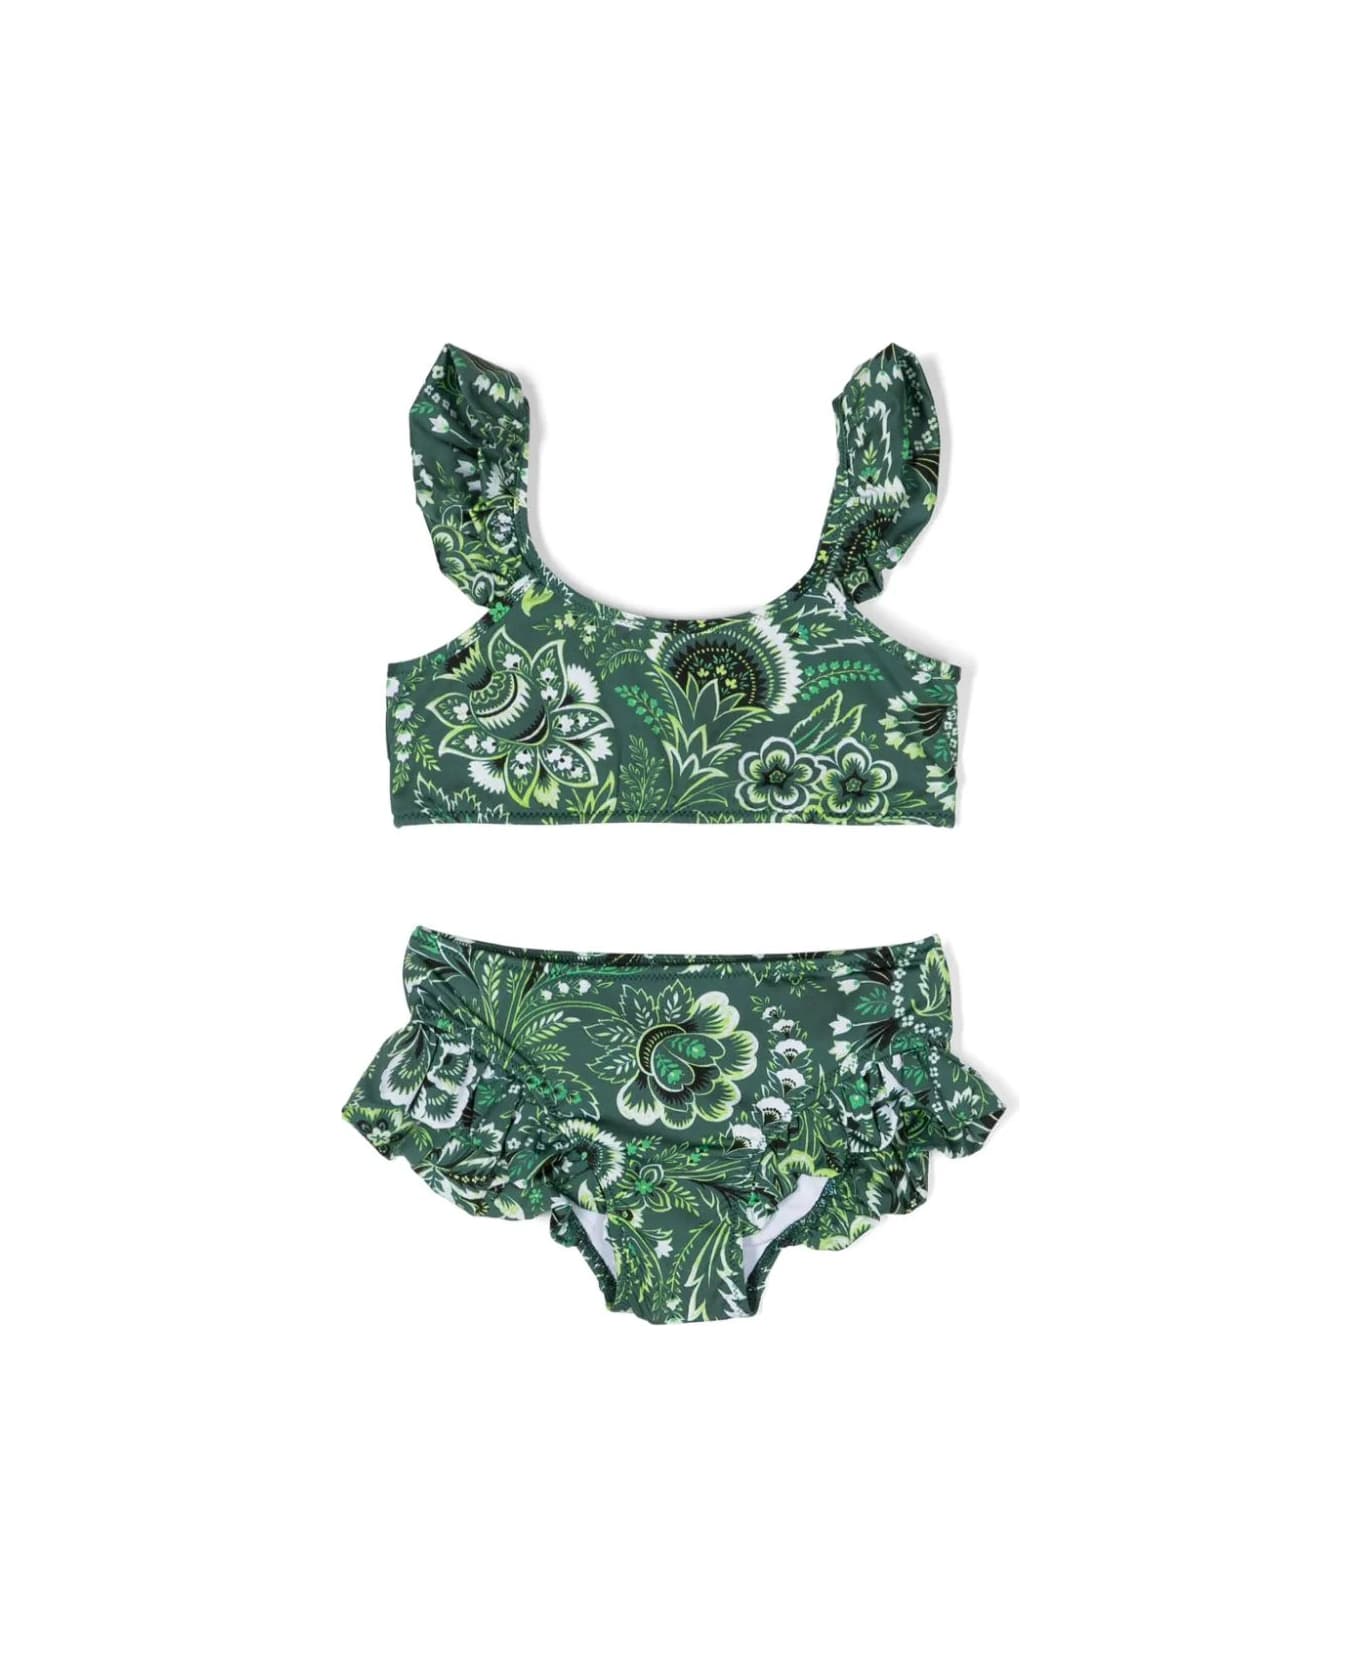 Etro Green Bikini With Ruffles And Paisley Motif - Green